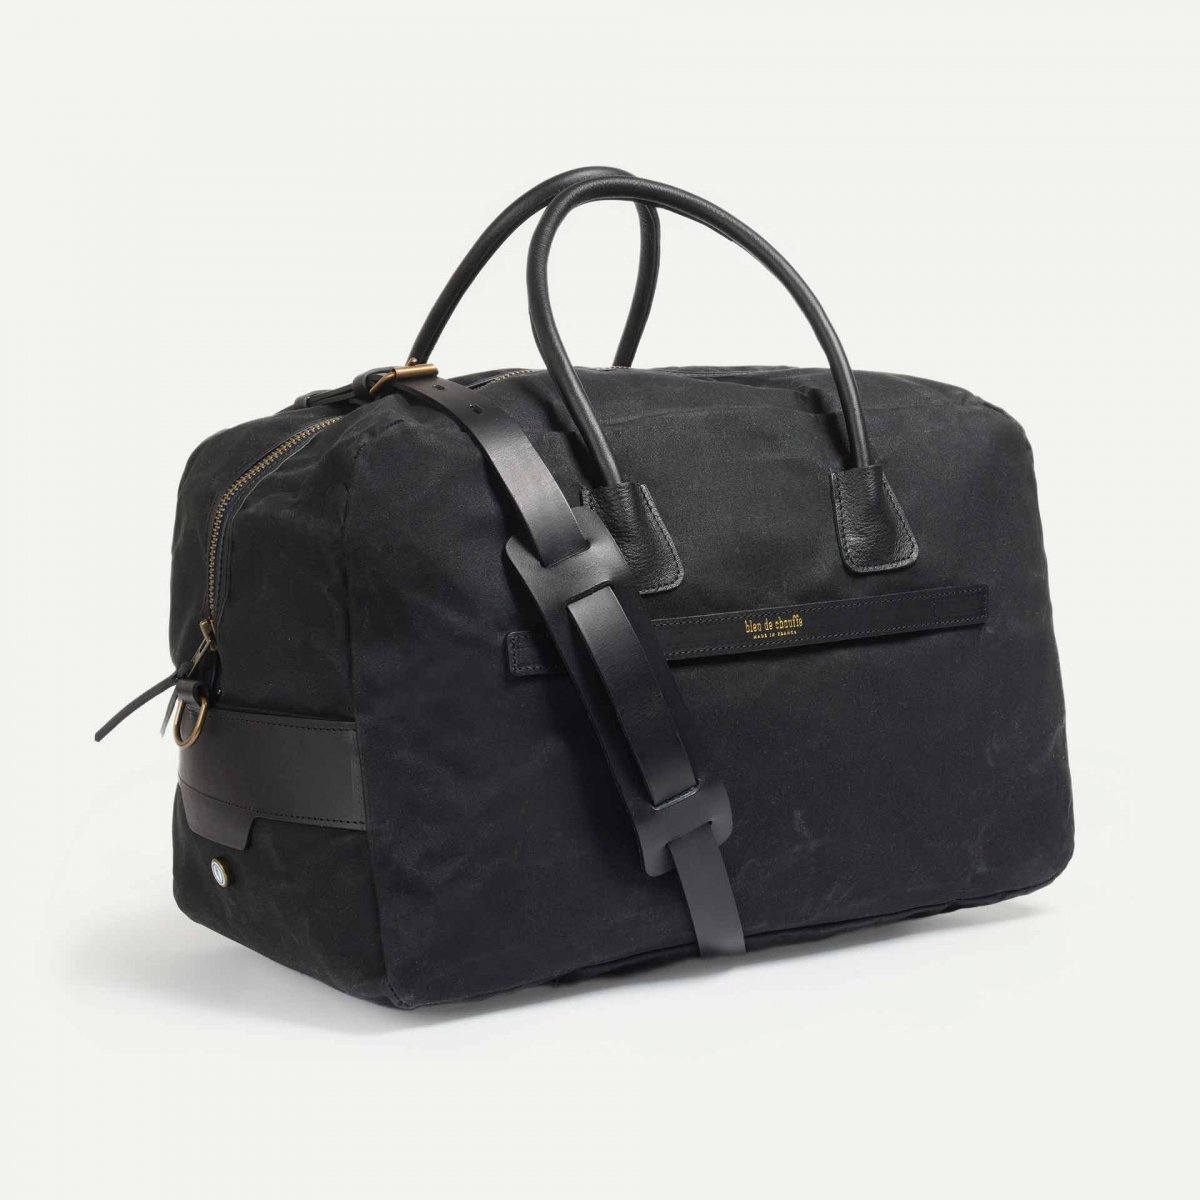 Zephir travel bag - Black waxed (image n°2)